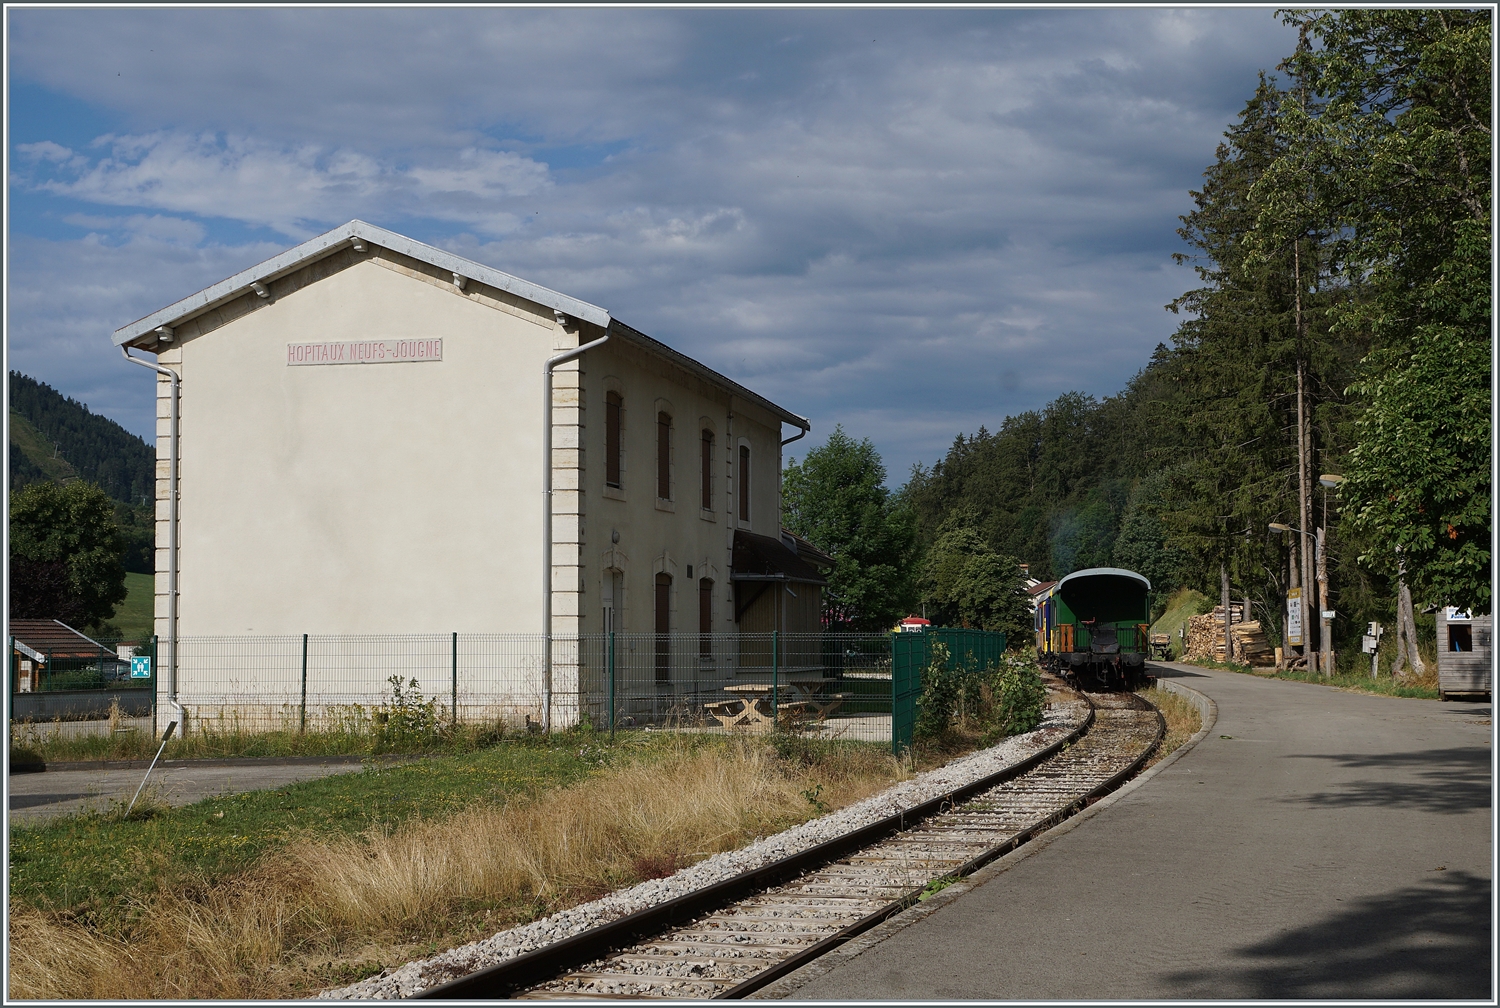 Das Bahnhofsgebäude von Hopitaux Neufe - Jougne; dieses wird aber von der Coni'Fer nicht genutzt. 

15. Juni 2023